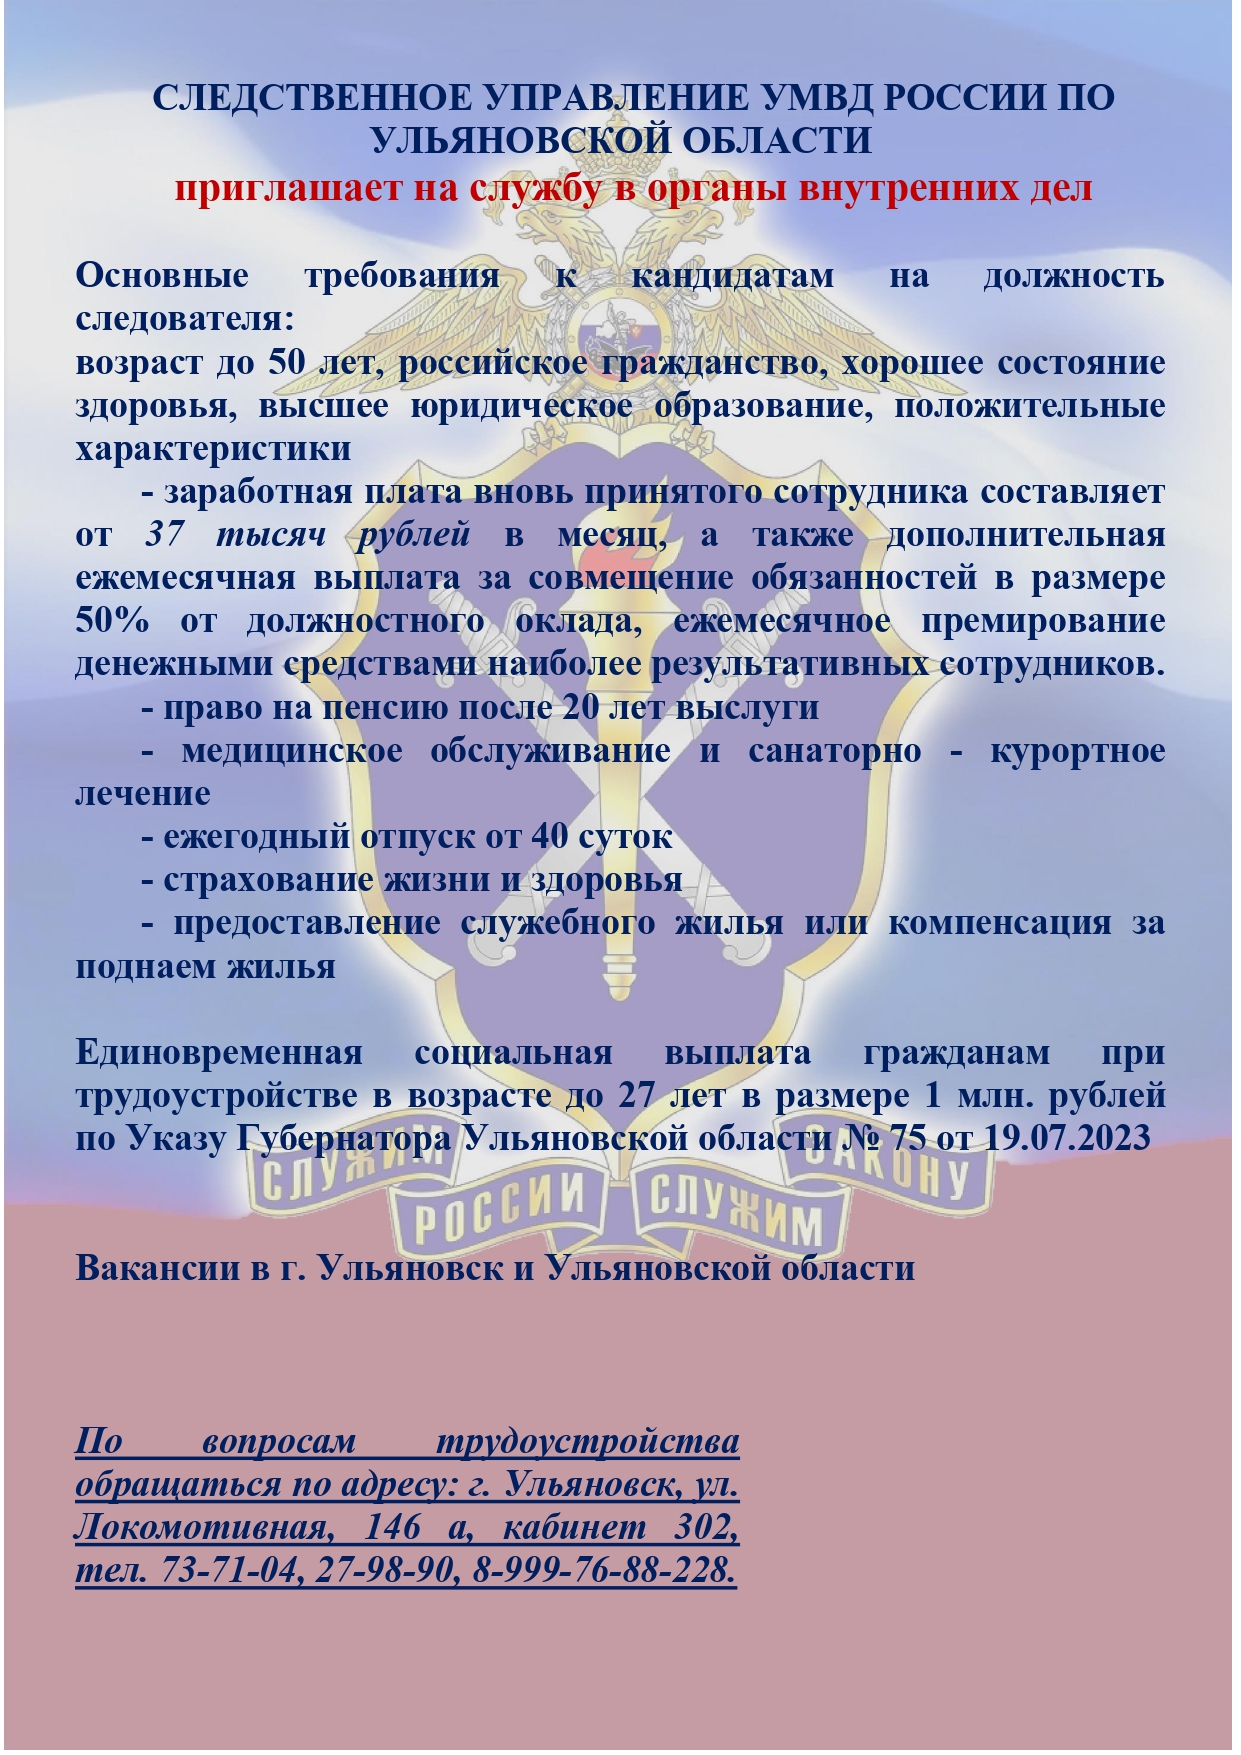 Следственное управление УМВД России по Ульяновской области приглашает выпускников на службу